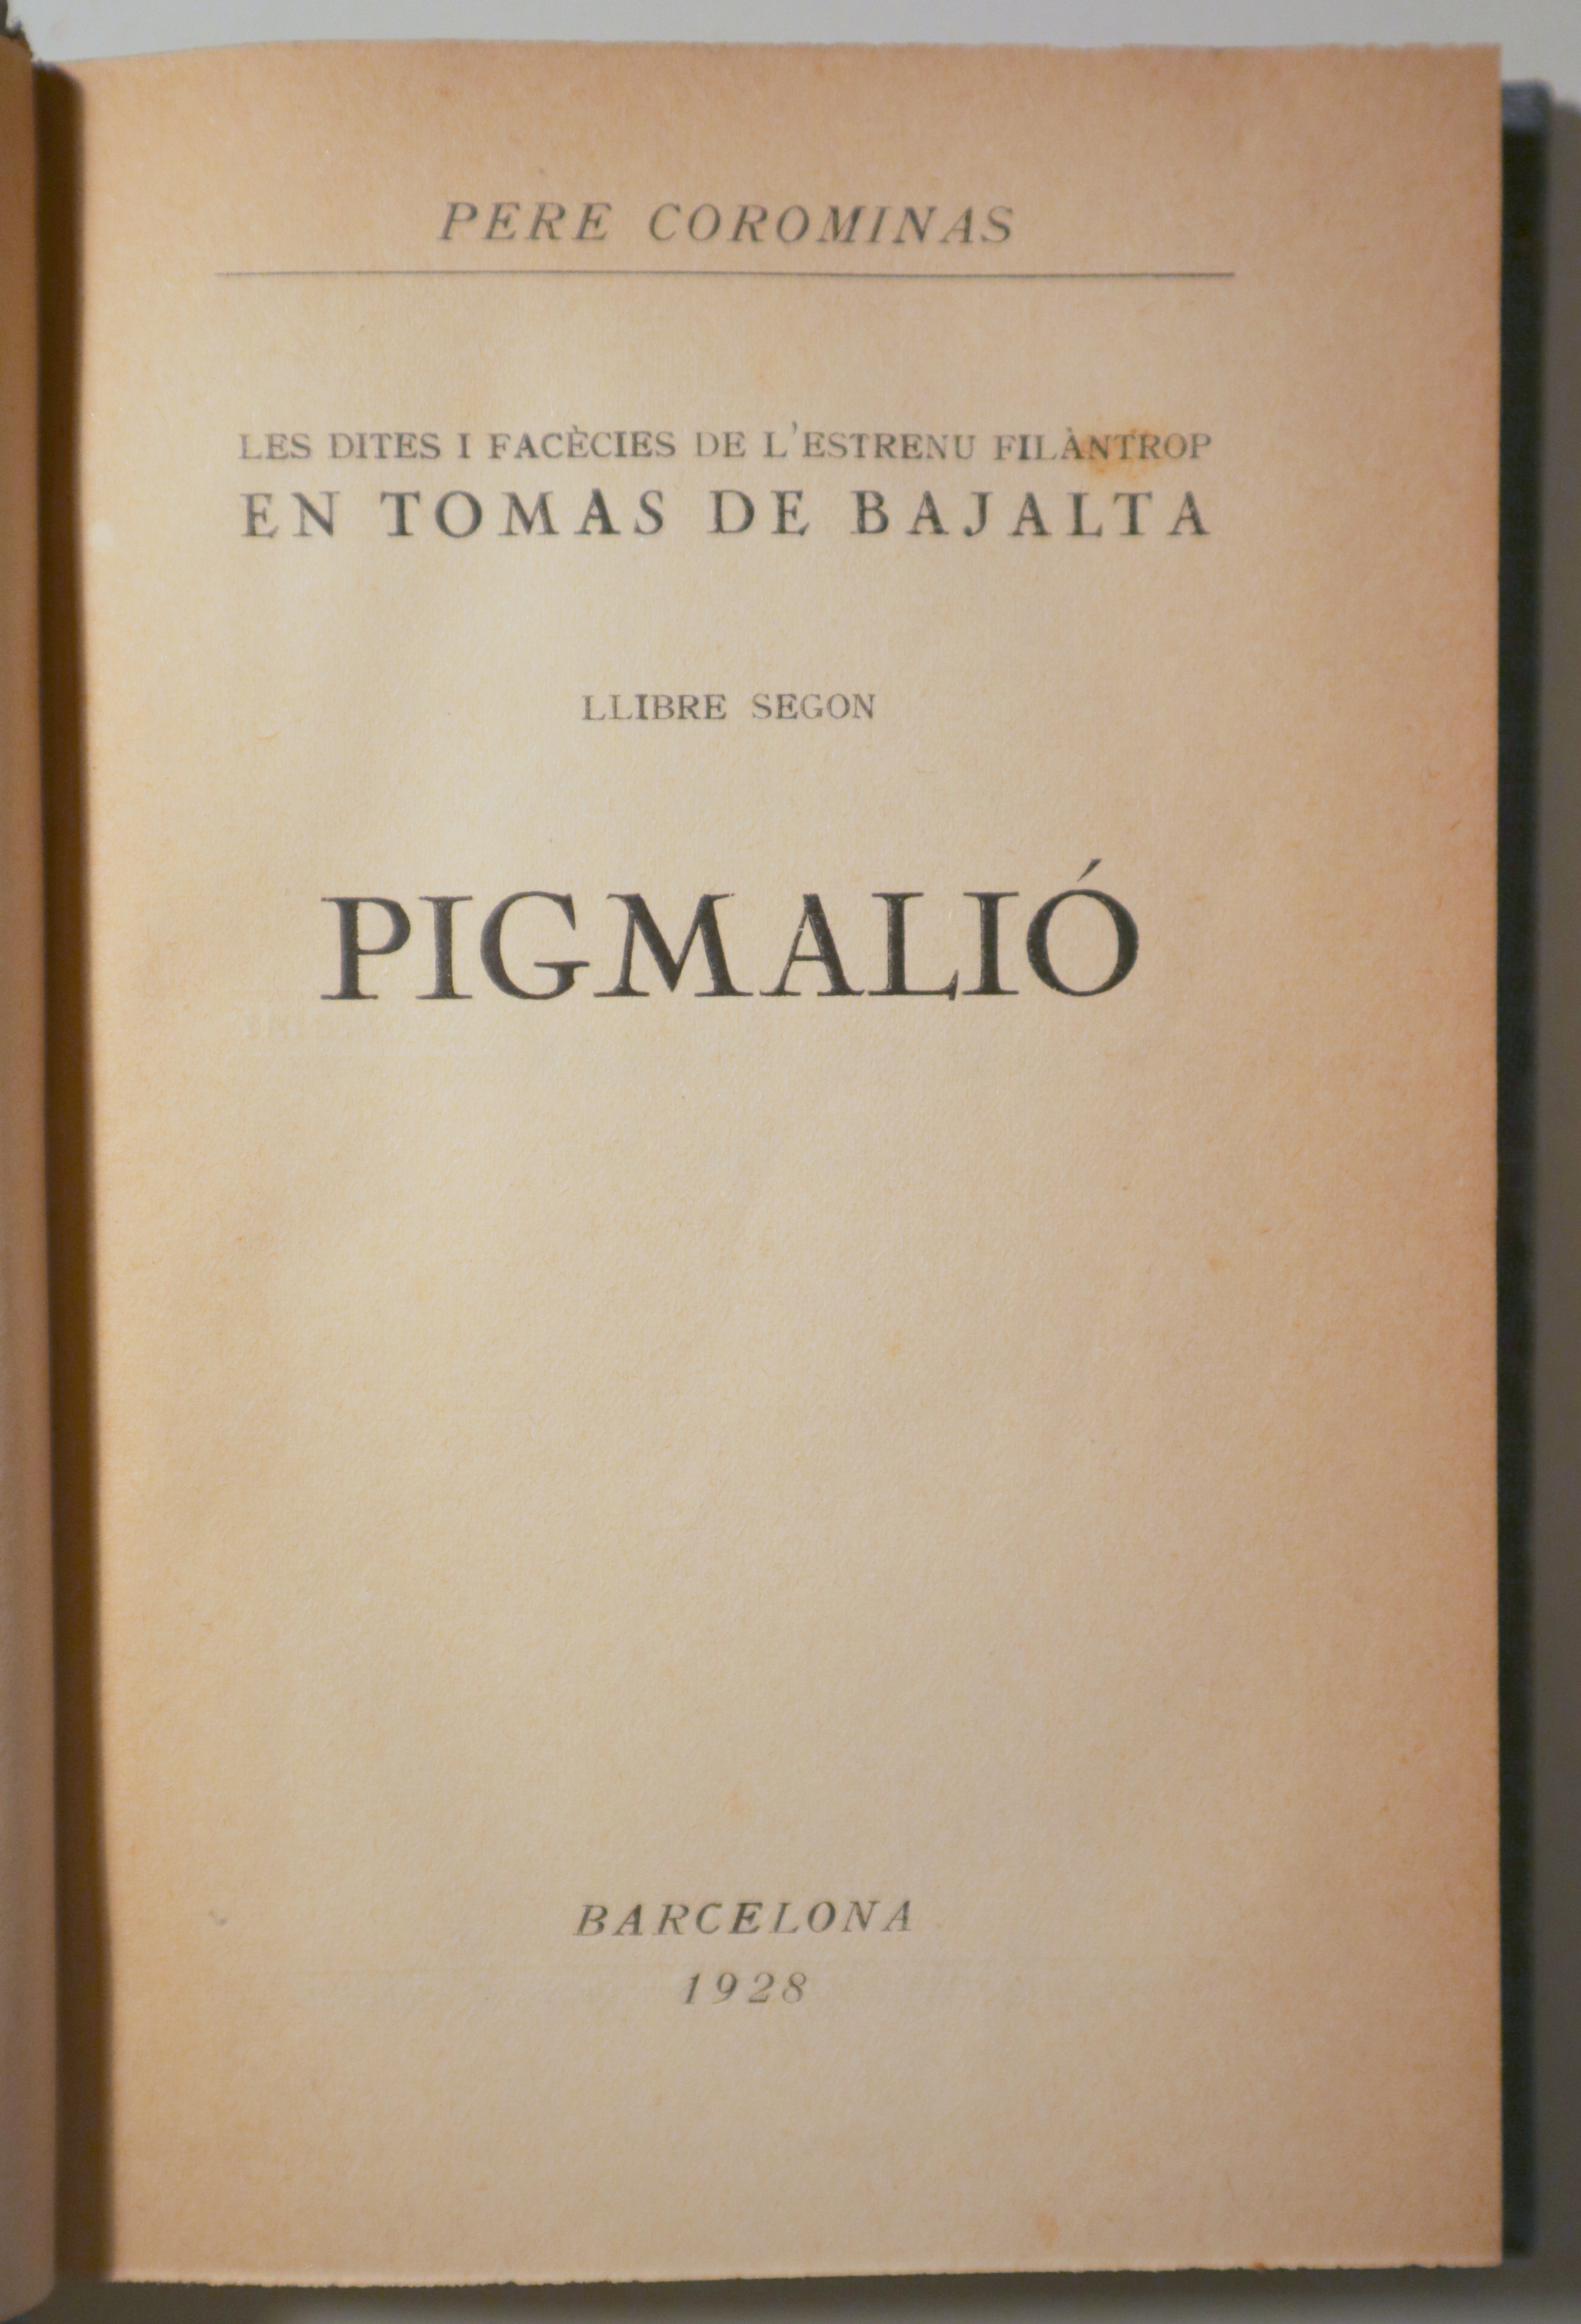 LES DITES I FACÈCIES DE L'ESTRENU FILÀNTROP (llibre segon). Pigmalió. En Tomàs de Bajalta - Barcelona 1928